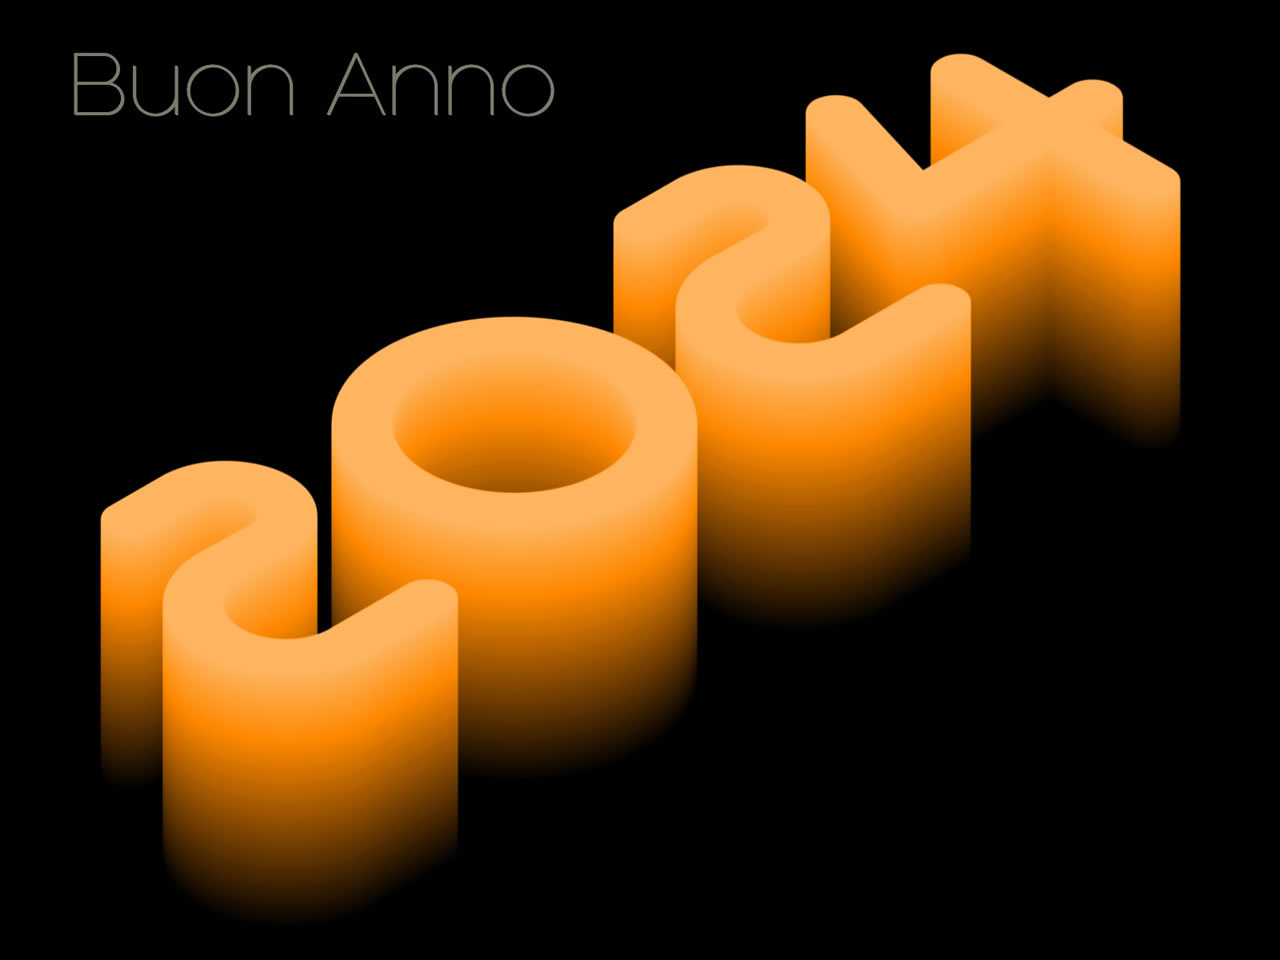 Immagine 2025 in 3D colore arancio